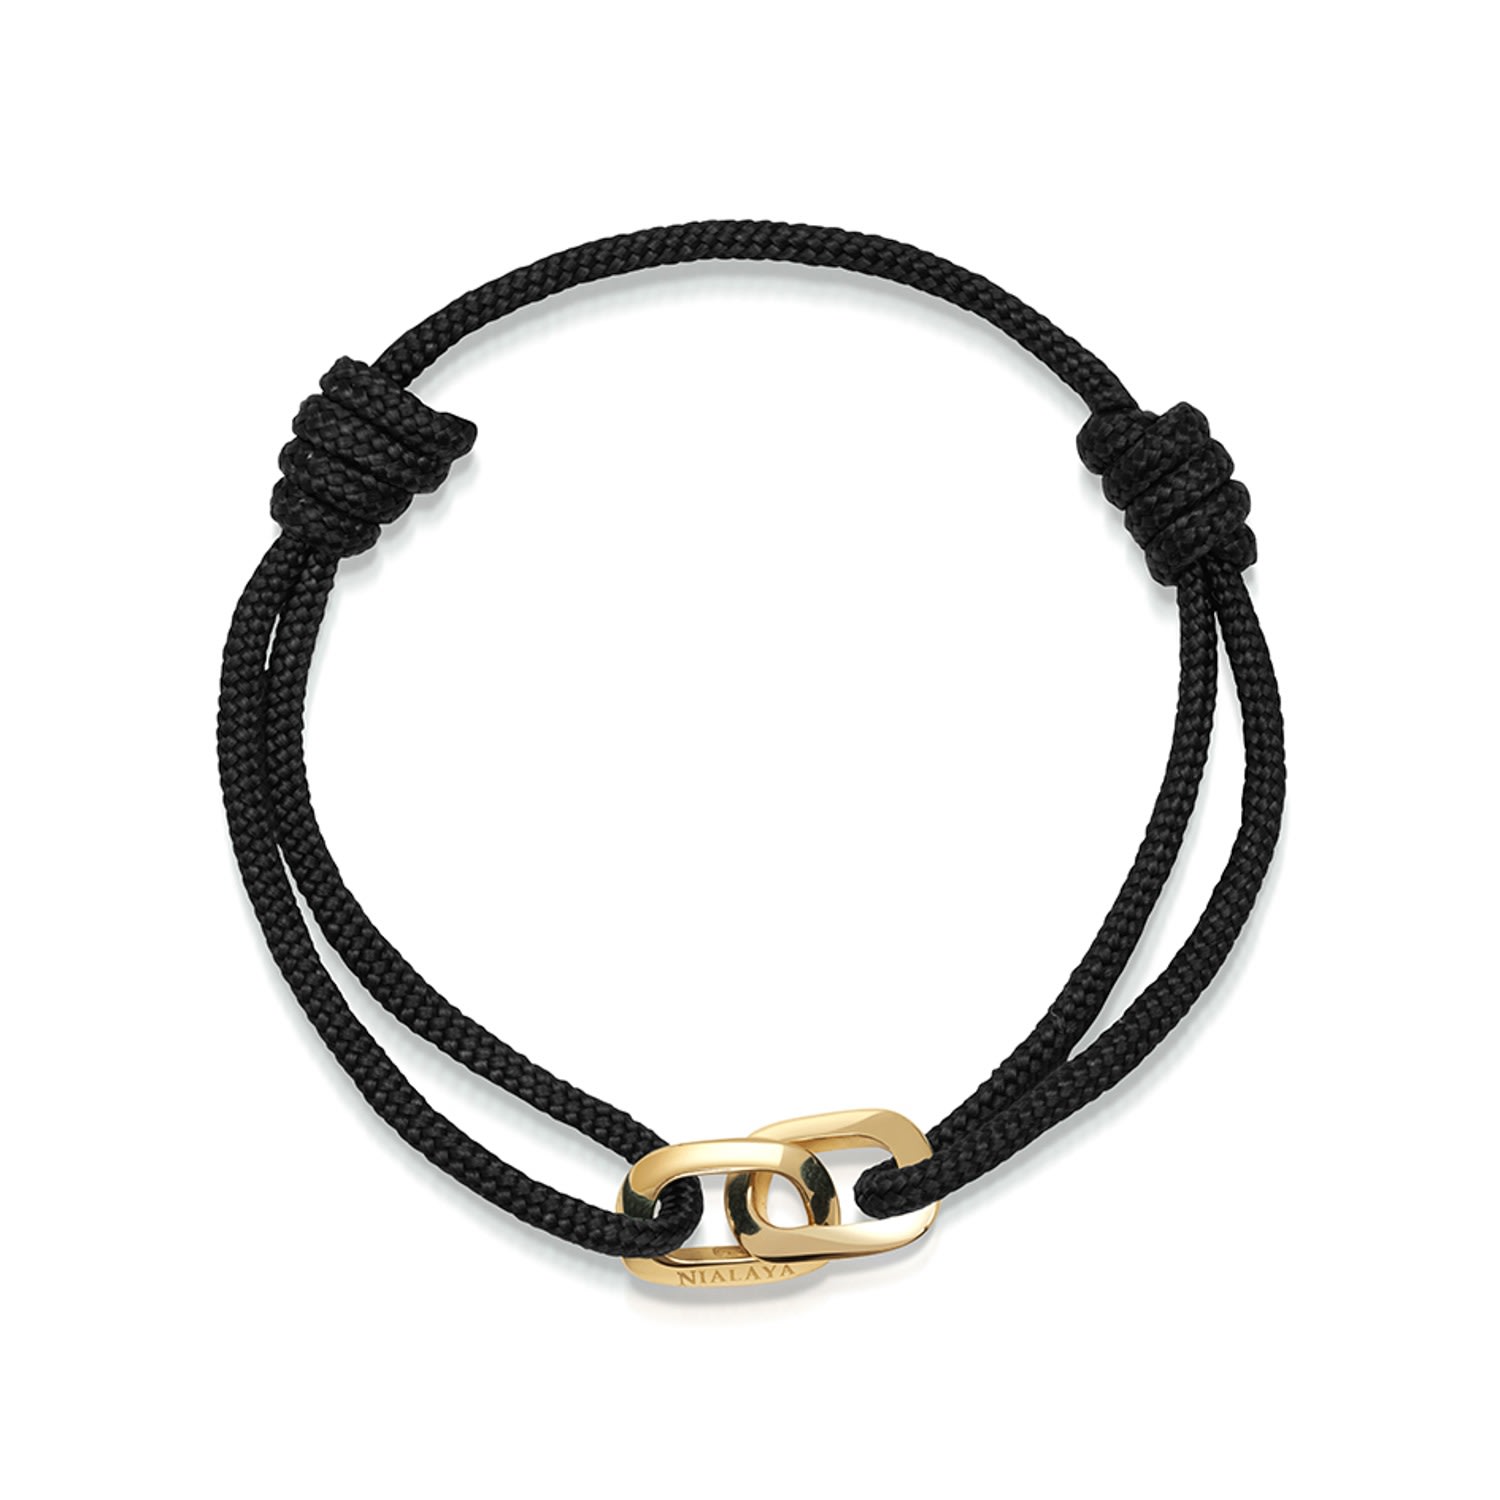 Men's Gold / Black Black String Bracelet With Gold Interlocking Rings Nialaya Jewelry